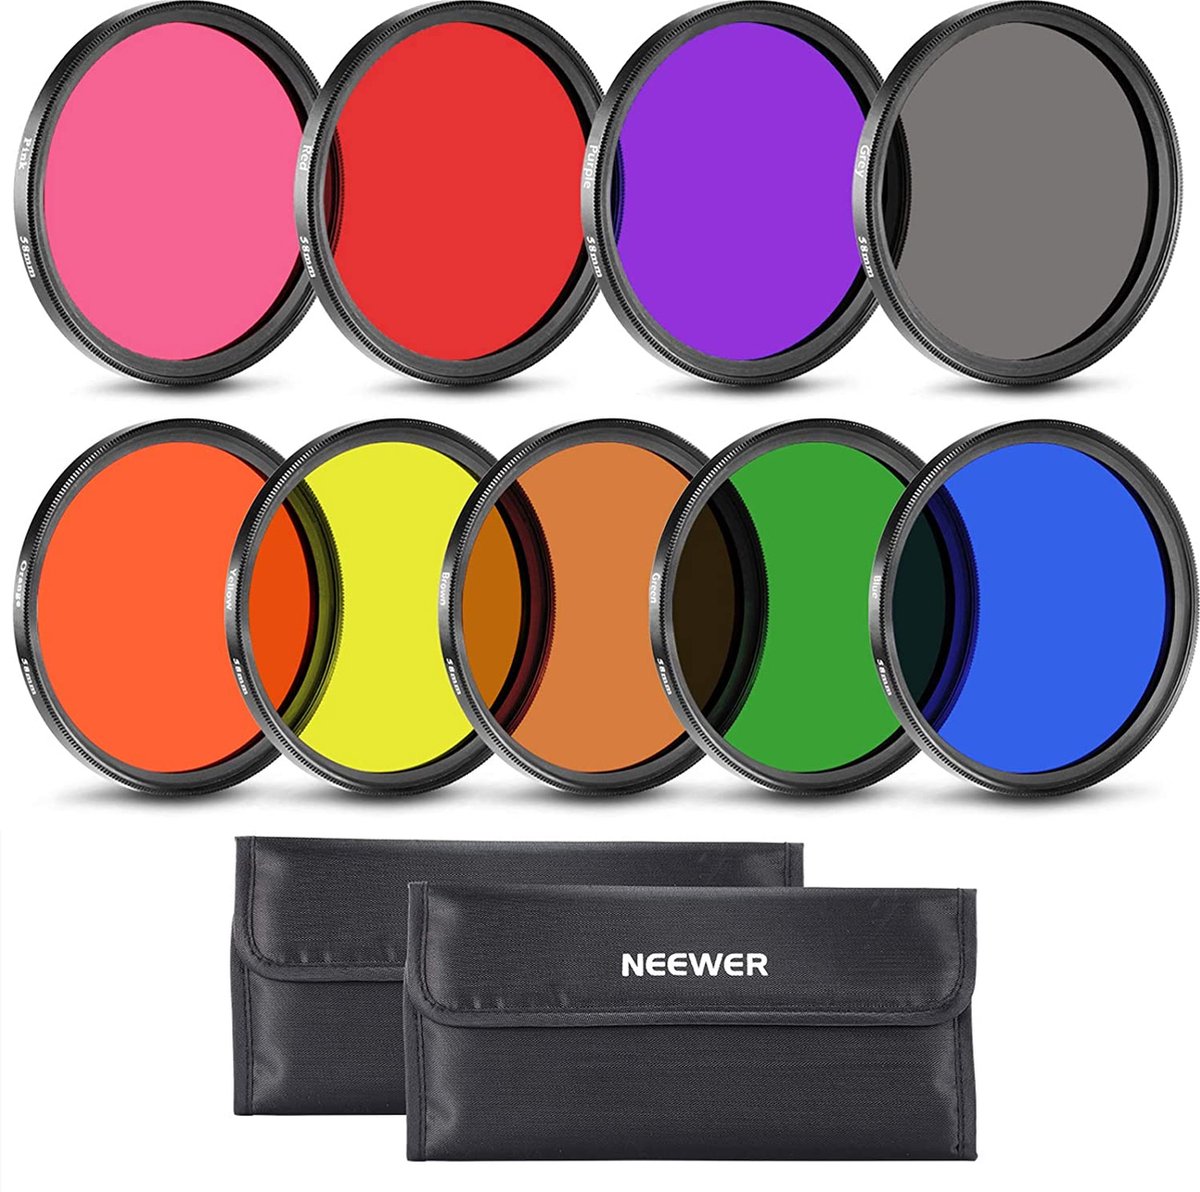 Neewer® - 58 mm Full Colour lensfilterset voor Cameralens - 9 Delige Kleurenfilterset Inclusief Rood -Oranje Blauw - Geel Groen Bruin Paars Roze en Grijs filter met Draagtas